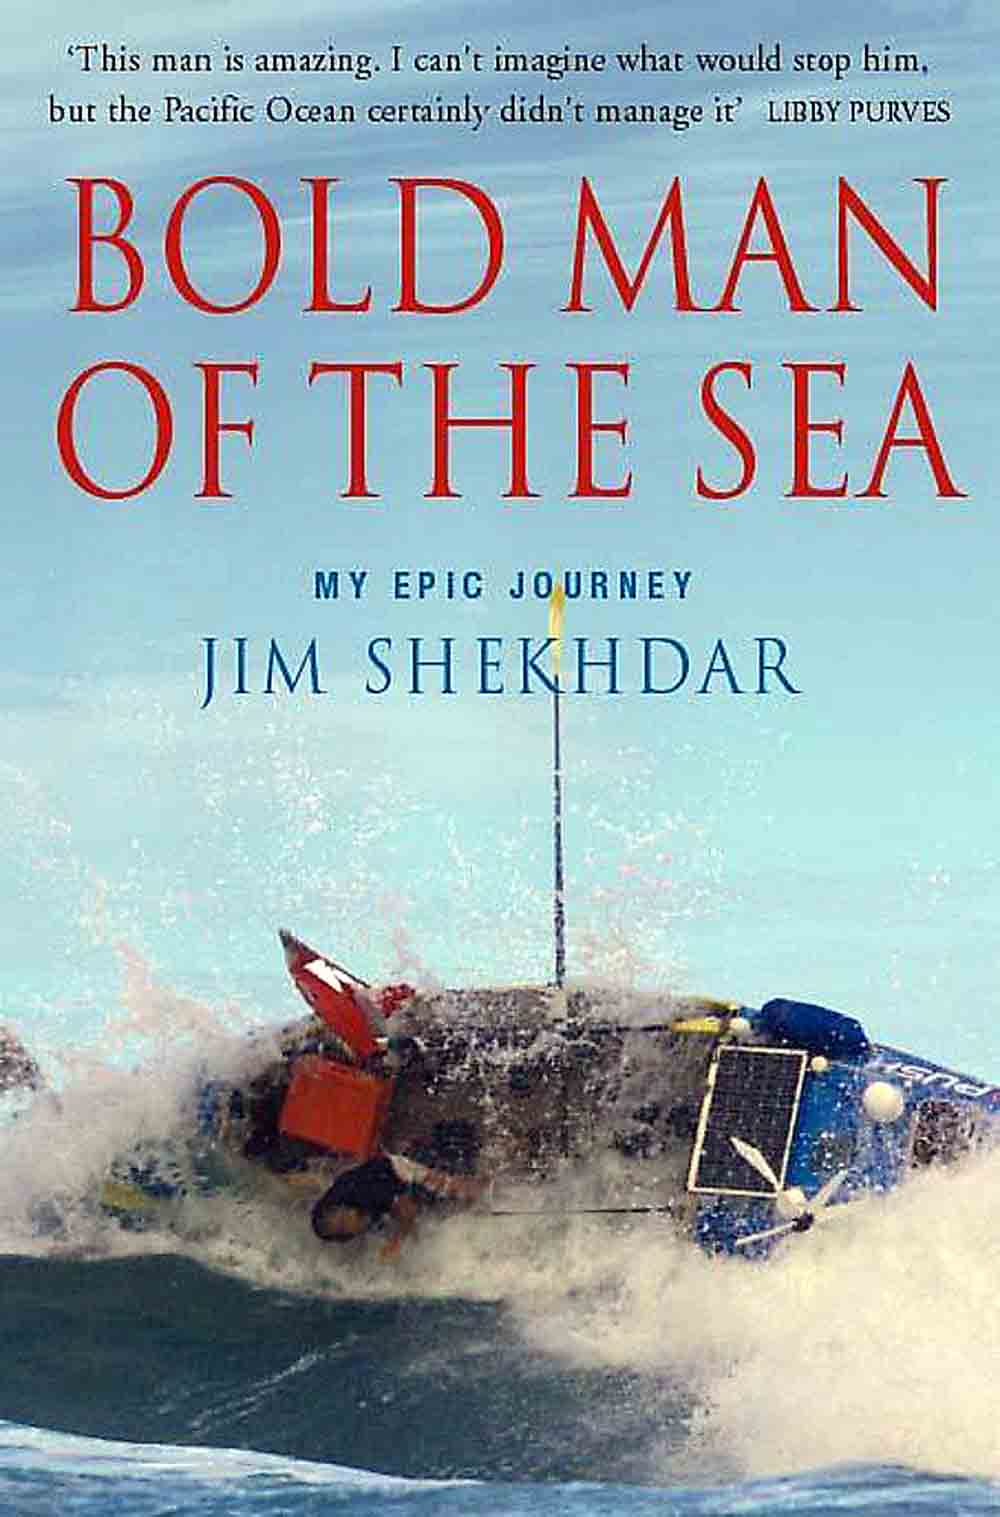 Jim Shekhdar autobiography